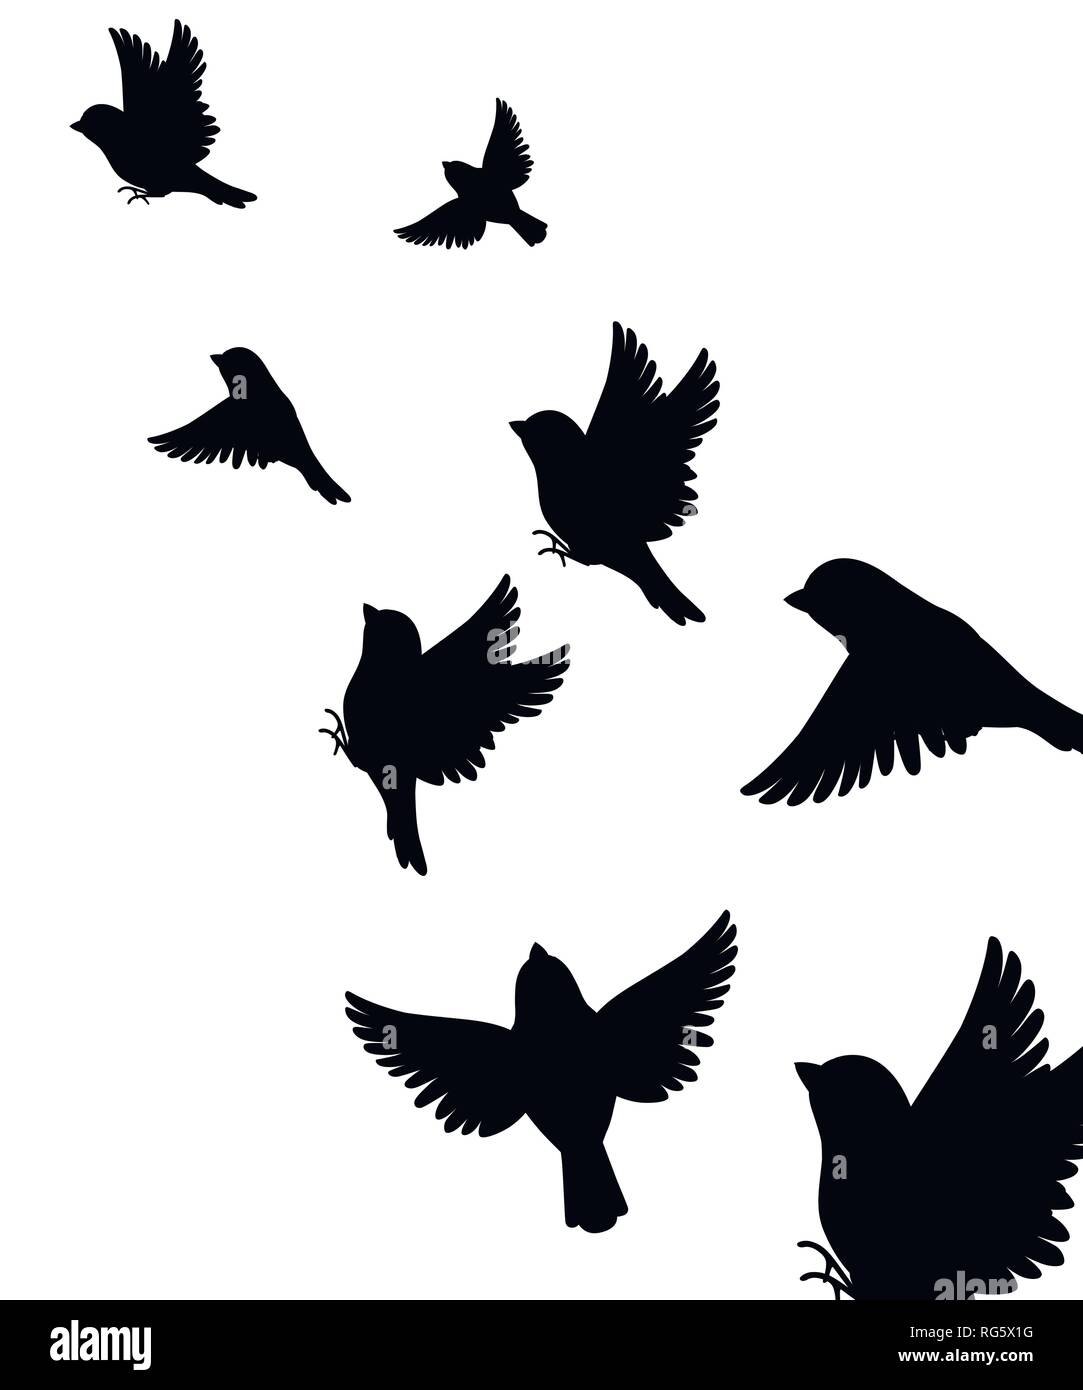 Abstract illustration de nombreux sparrow bird flying. Silhouette noire. Oiseau voler au sommet. Vector illustration sur fond blanc. Illustration de Vecteur